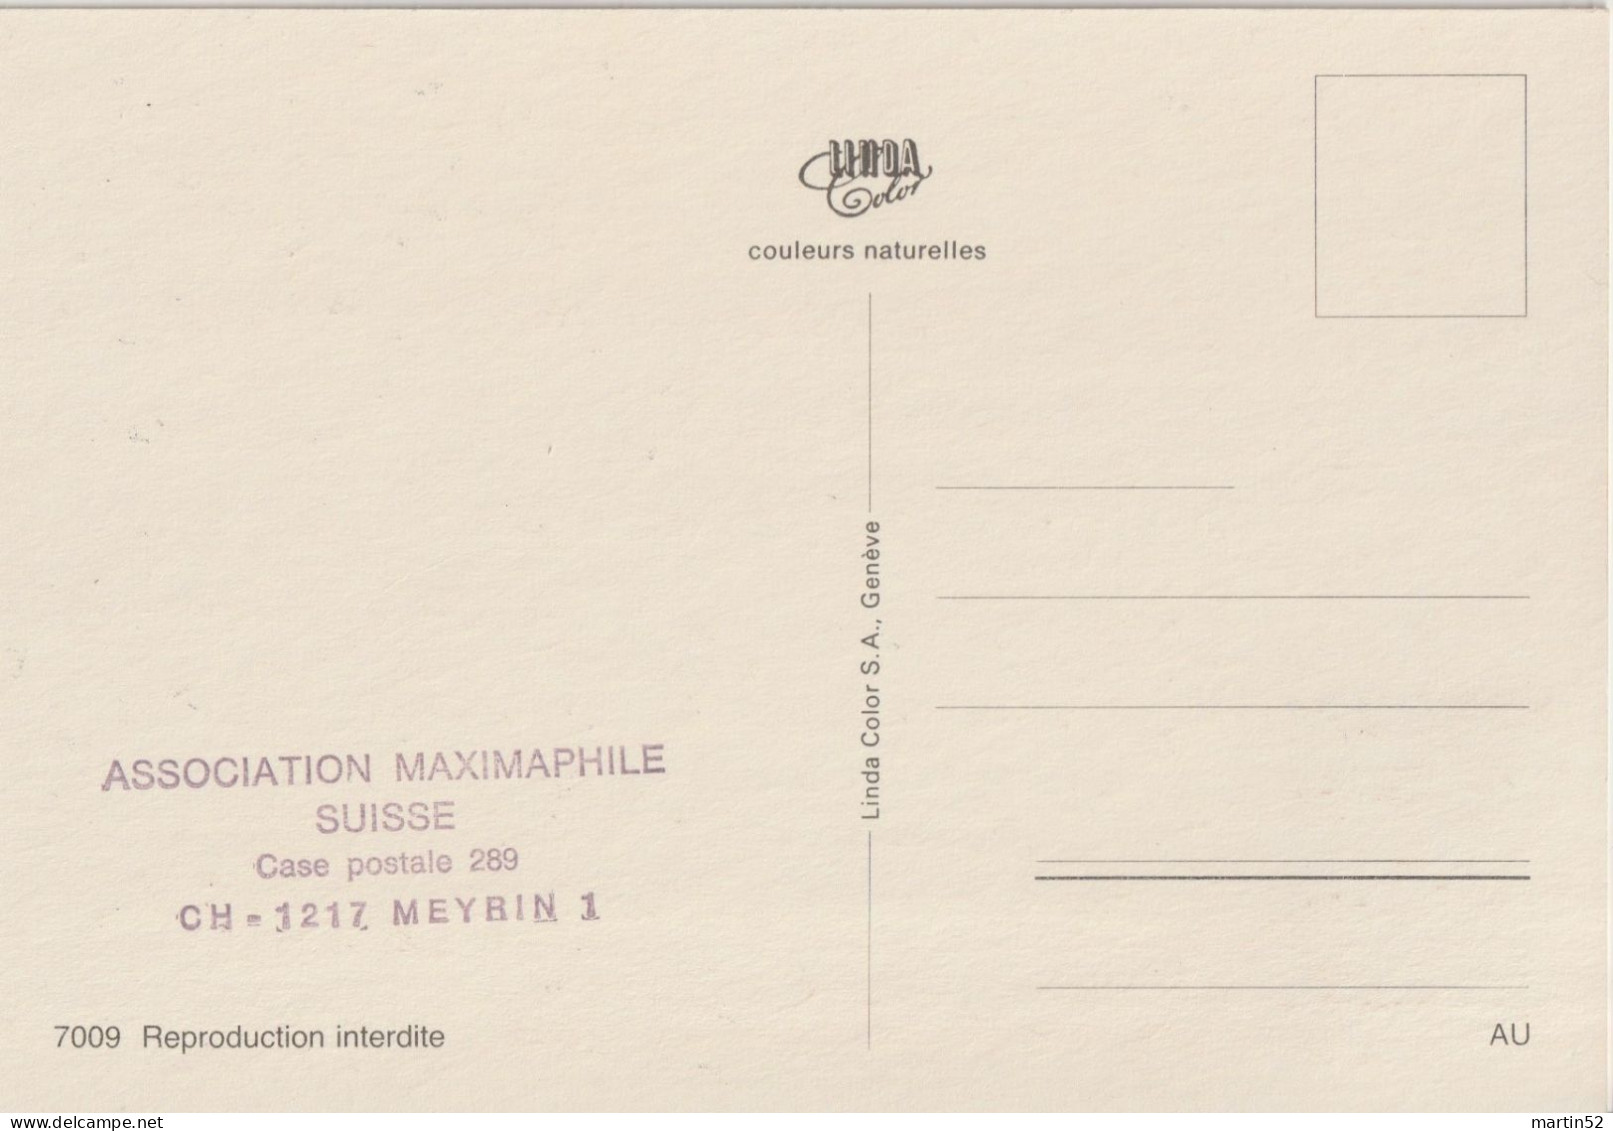 Schweiz Suisse 1984: Zu 706 Mi 1268 Yv 1197 SAINT IMIER 884-1984 Tour St.Martin Sur CM Multivues Avec ⊙ ST.IMIER 21.2.84 - Relojería